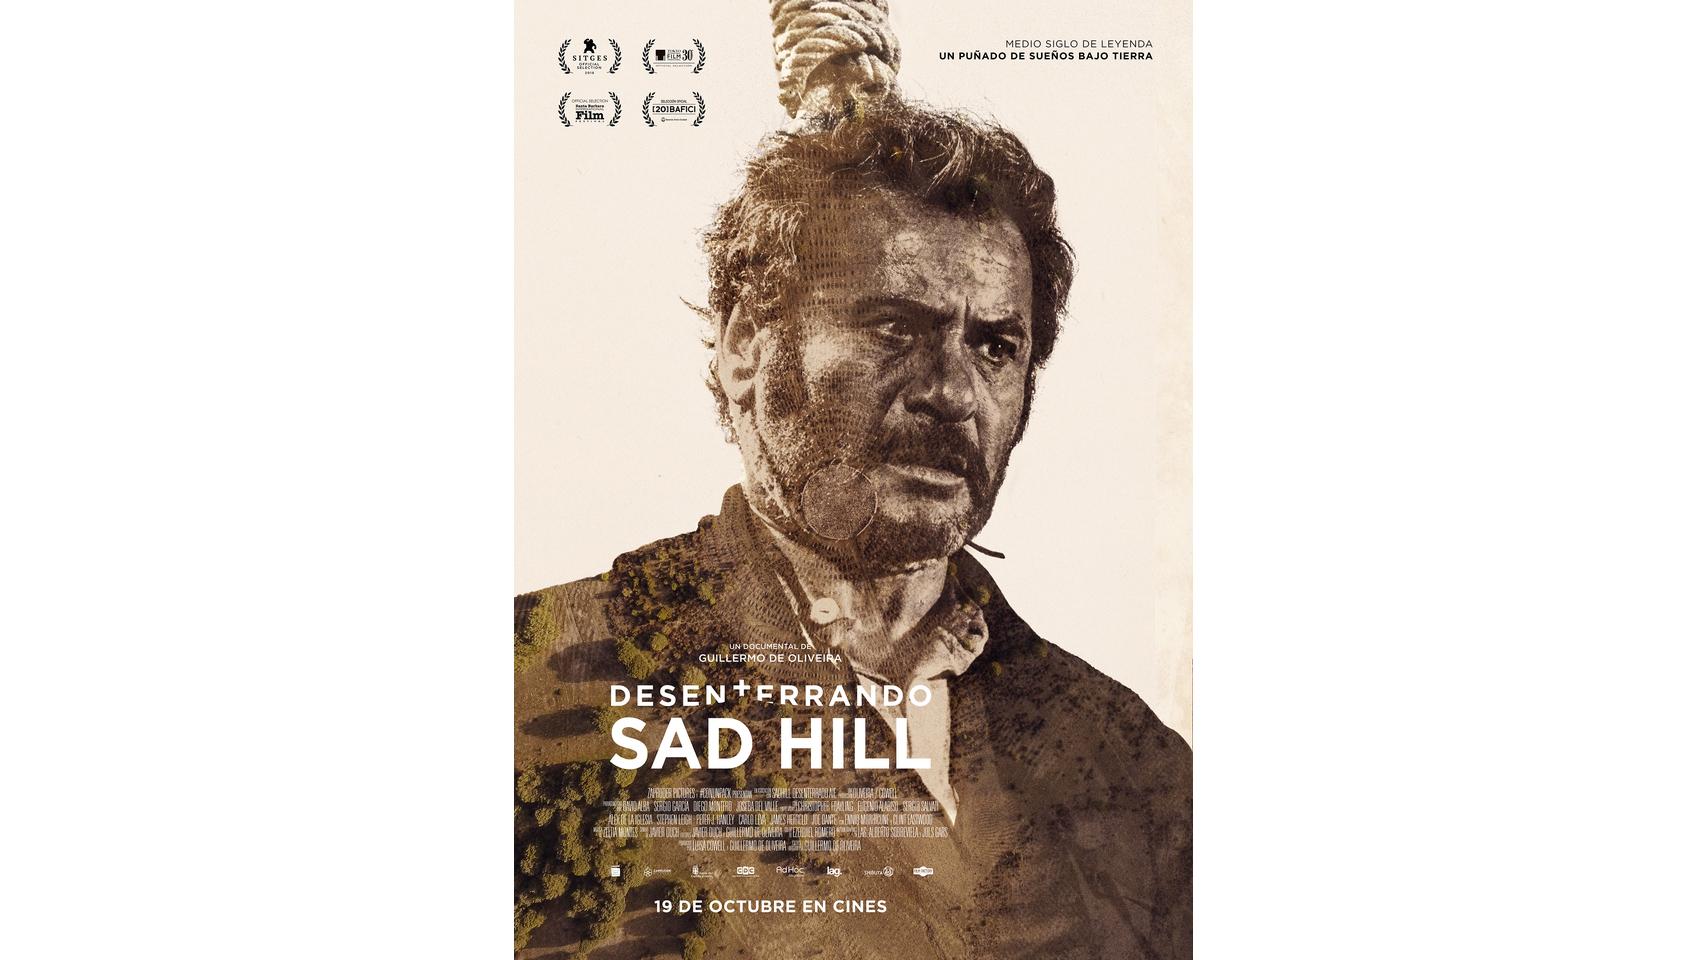 El Español te ofrece en exclusiva el póster de 'Desenterrando Sad Hill'.